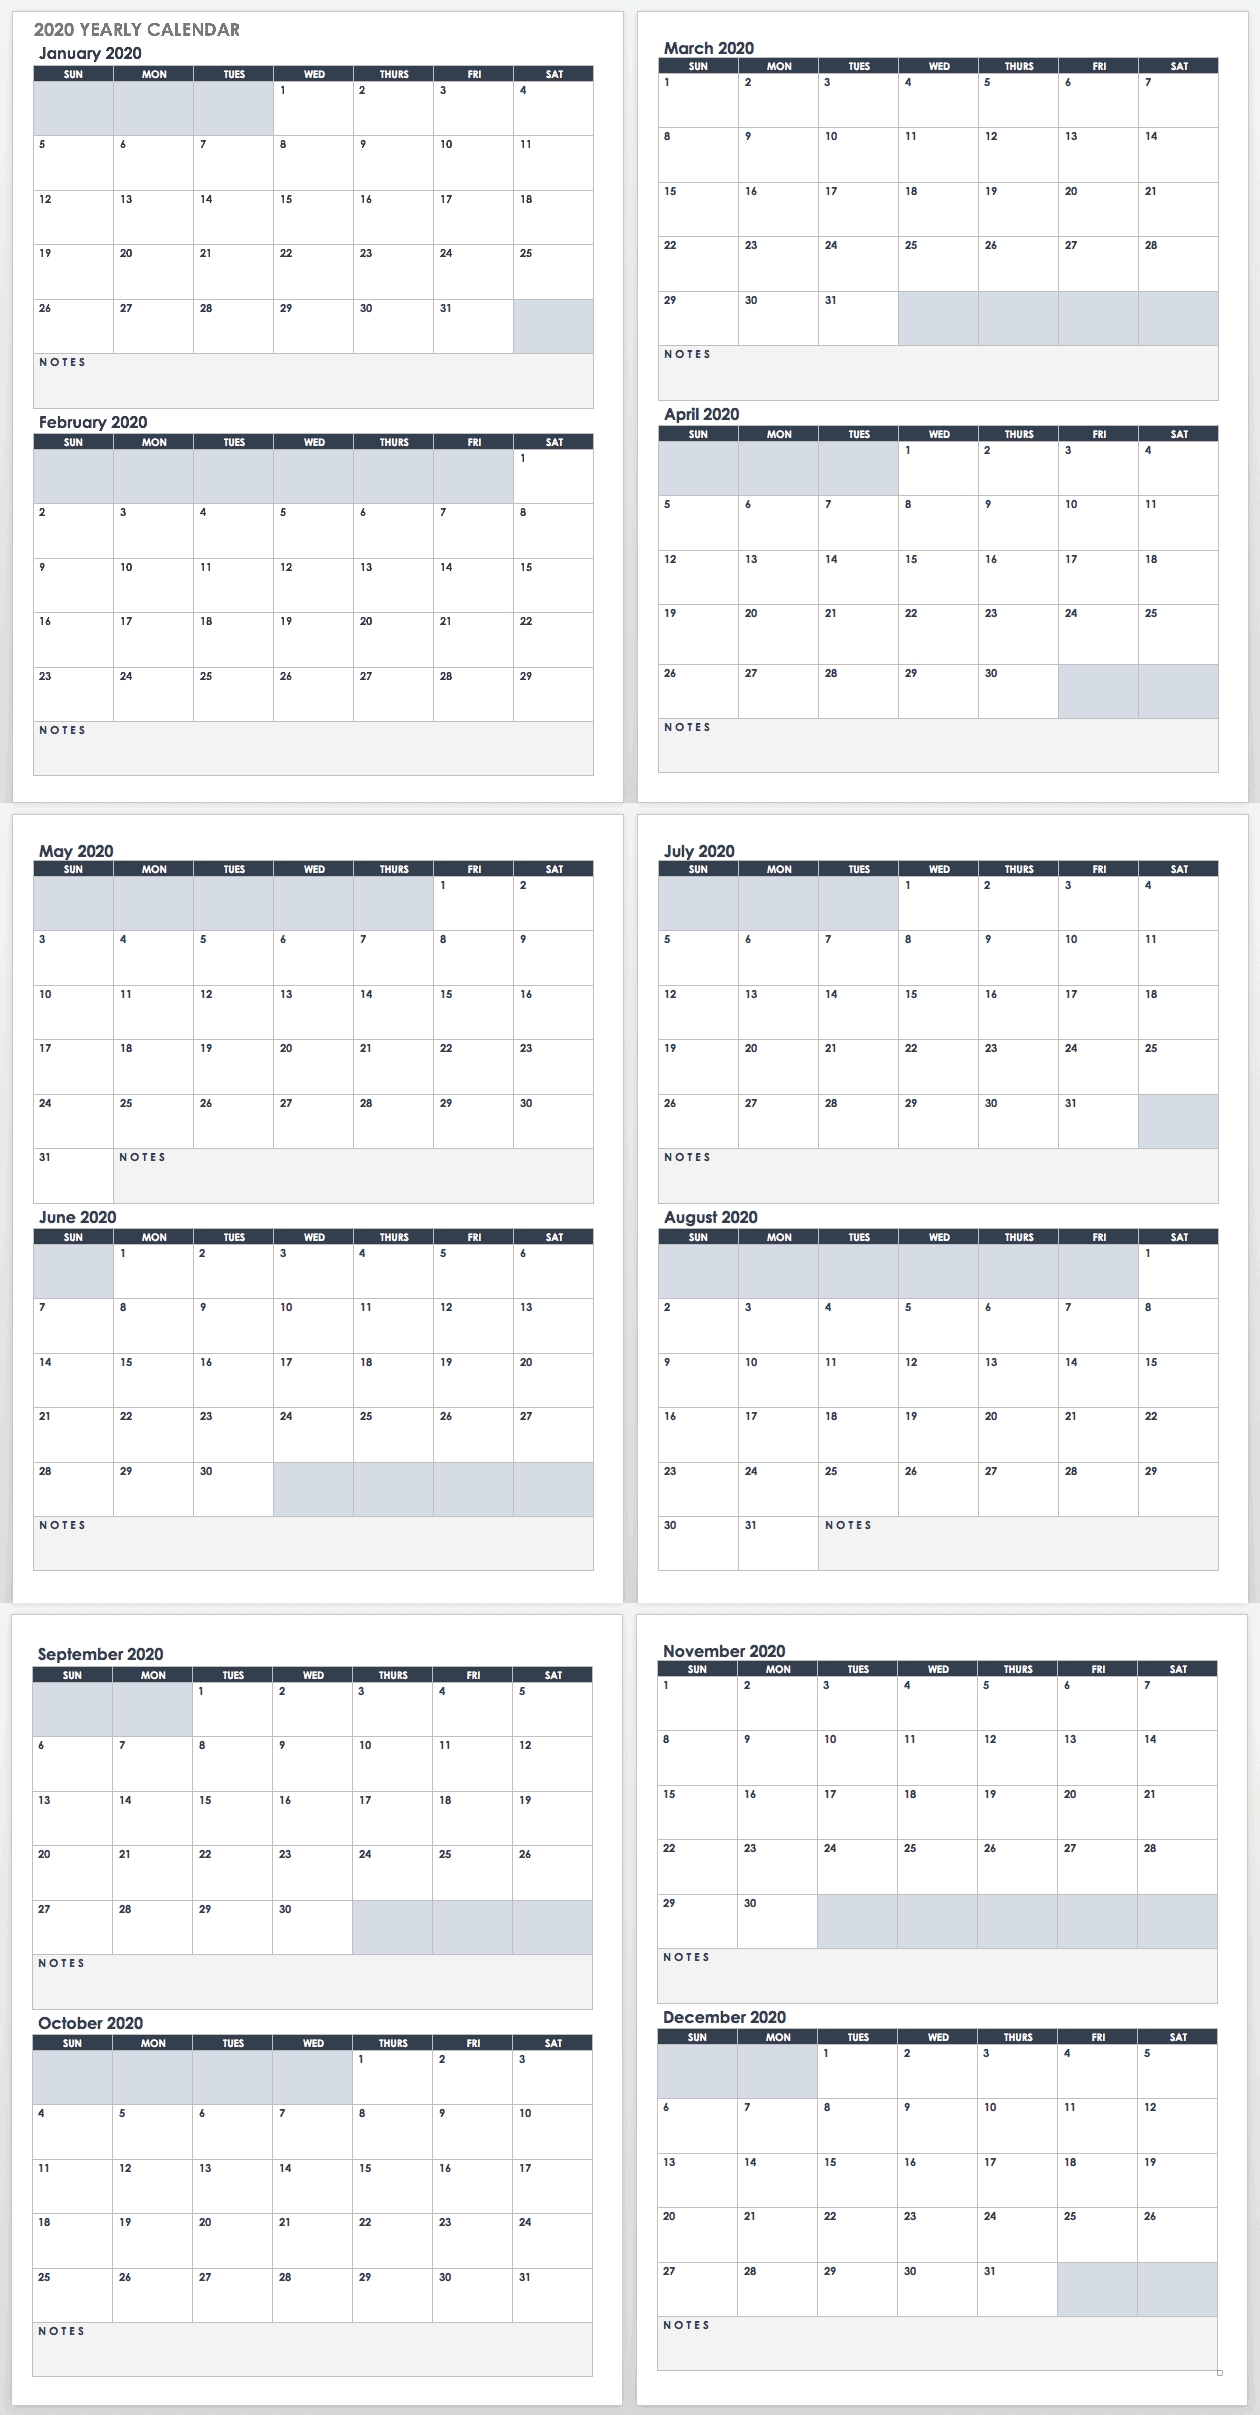 2020 Employee Attendance Calendar Free | Calendar For Planning-Attendance Calendars 2021